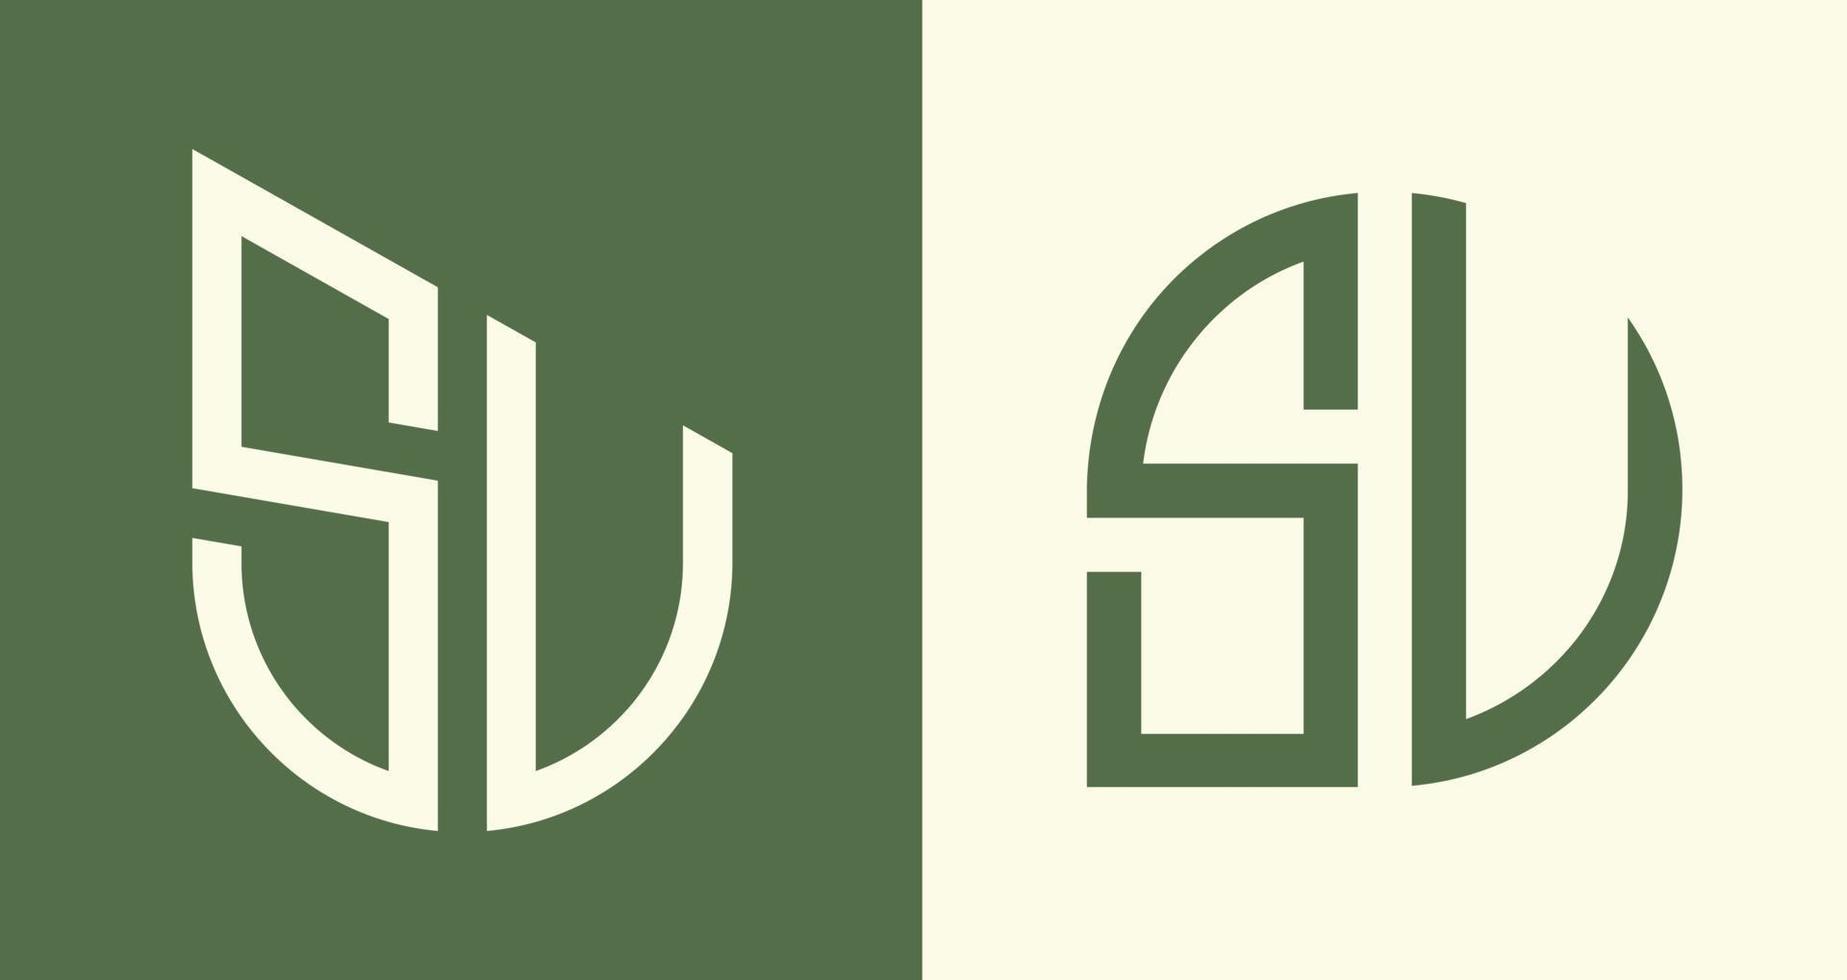 Creative simple Initial Letters SU Logo Designs Bundle. vector